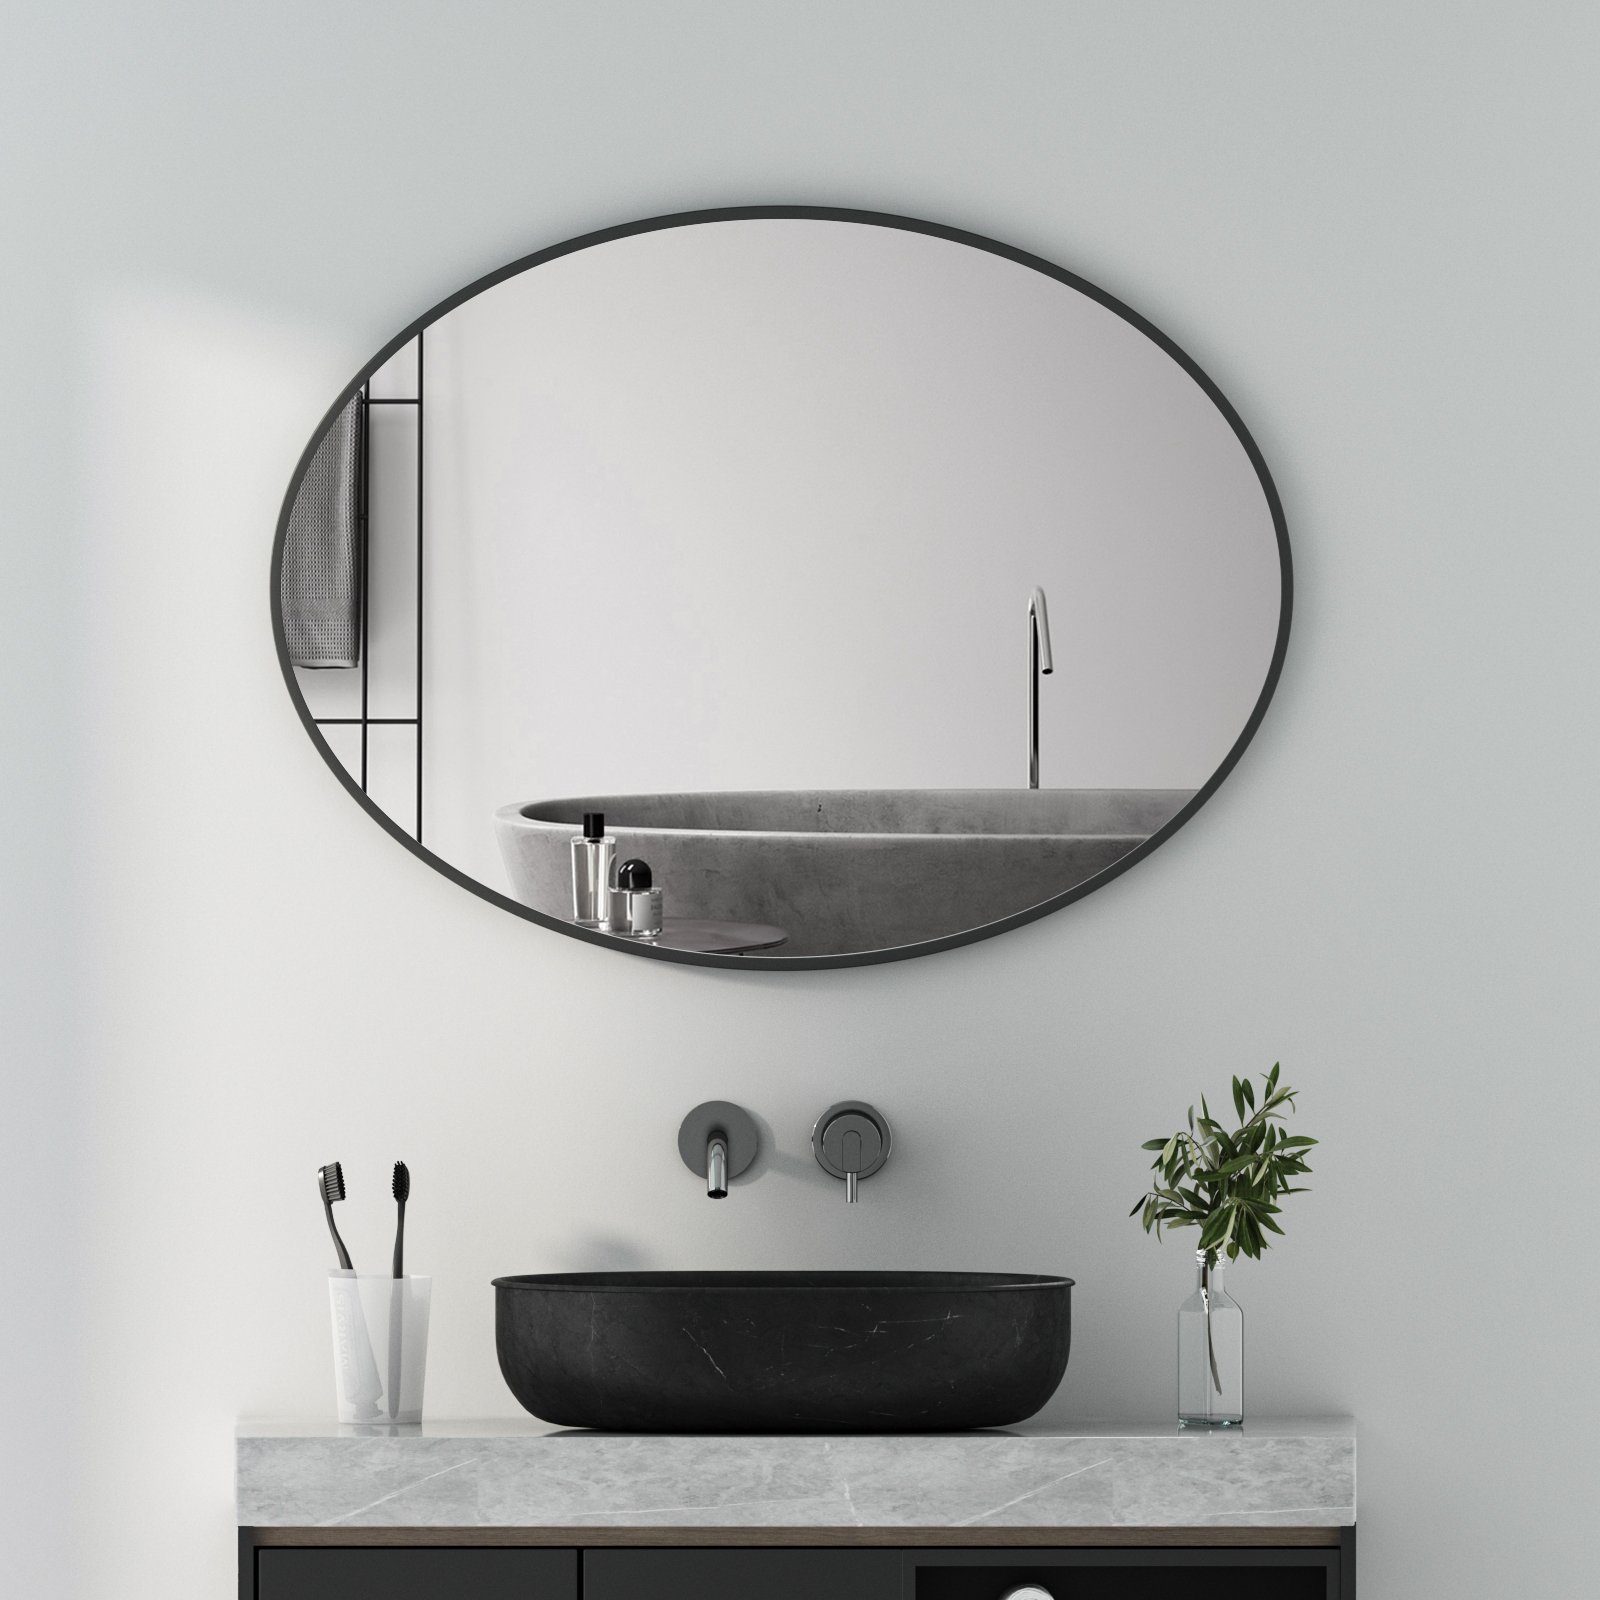 Spiegel-Badezimmerspiegel, runder Wandspiegel, keine Perforation, schnelles  Beschlagen, Rahmen aus Aluminiumlegierung, leicht zu reinigen/Weiß / 50cm :  : Küche, Haushalt & Wohnen